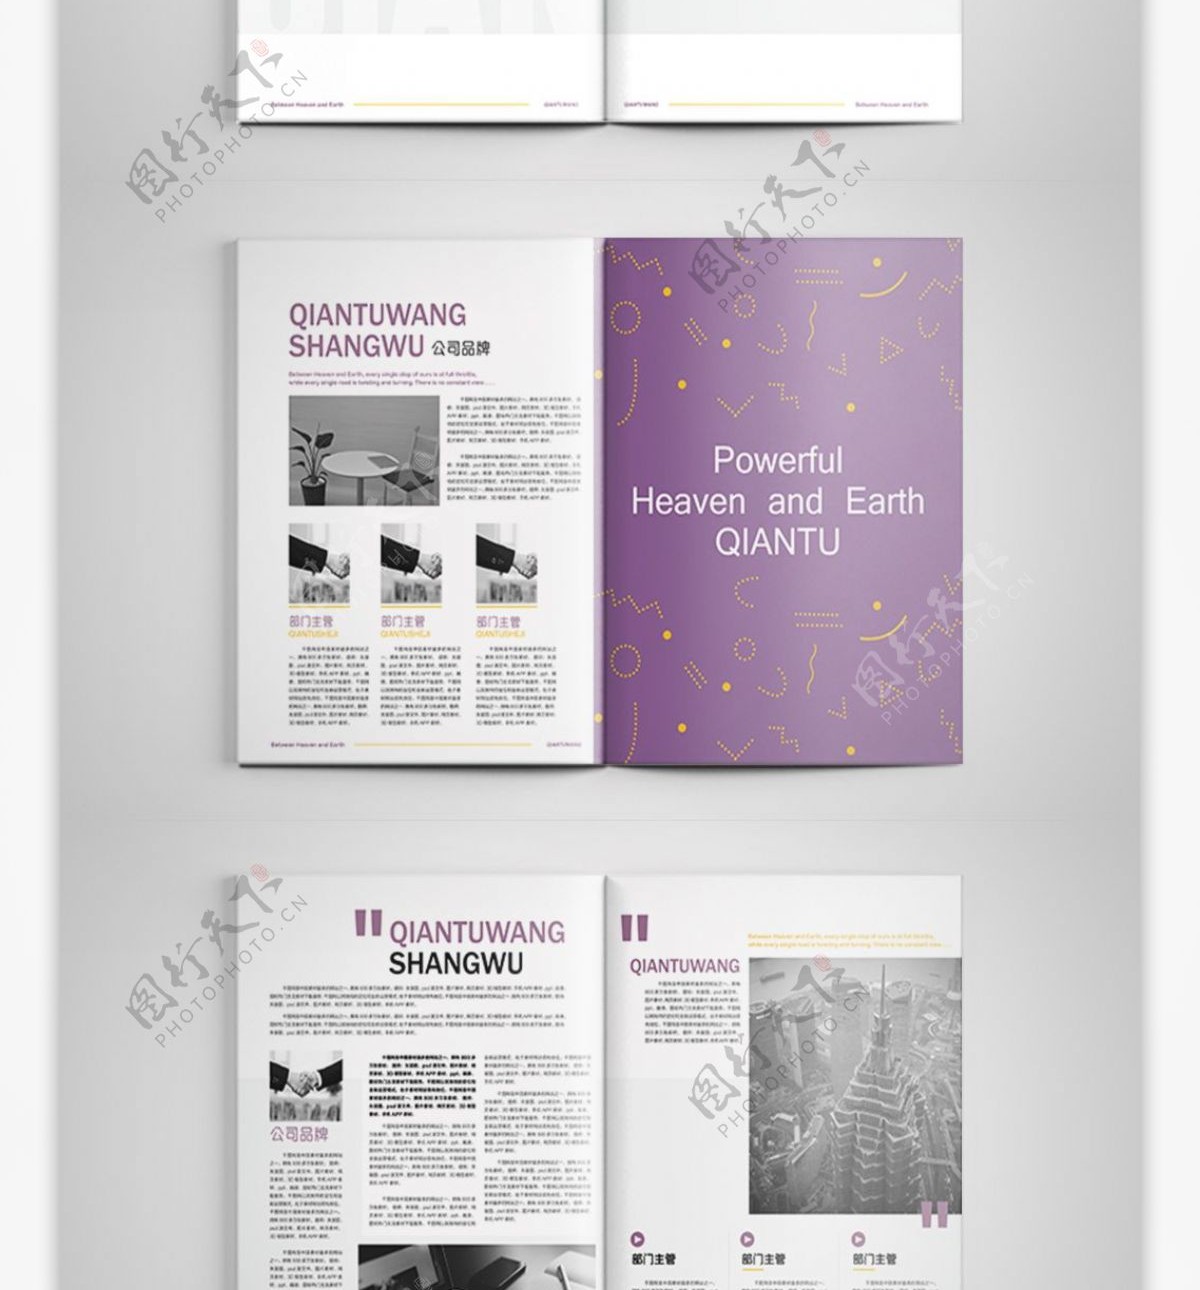 紫色梦幻商务企业画册